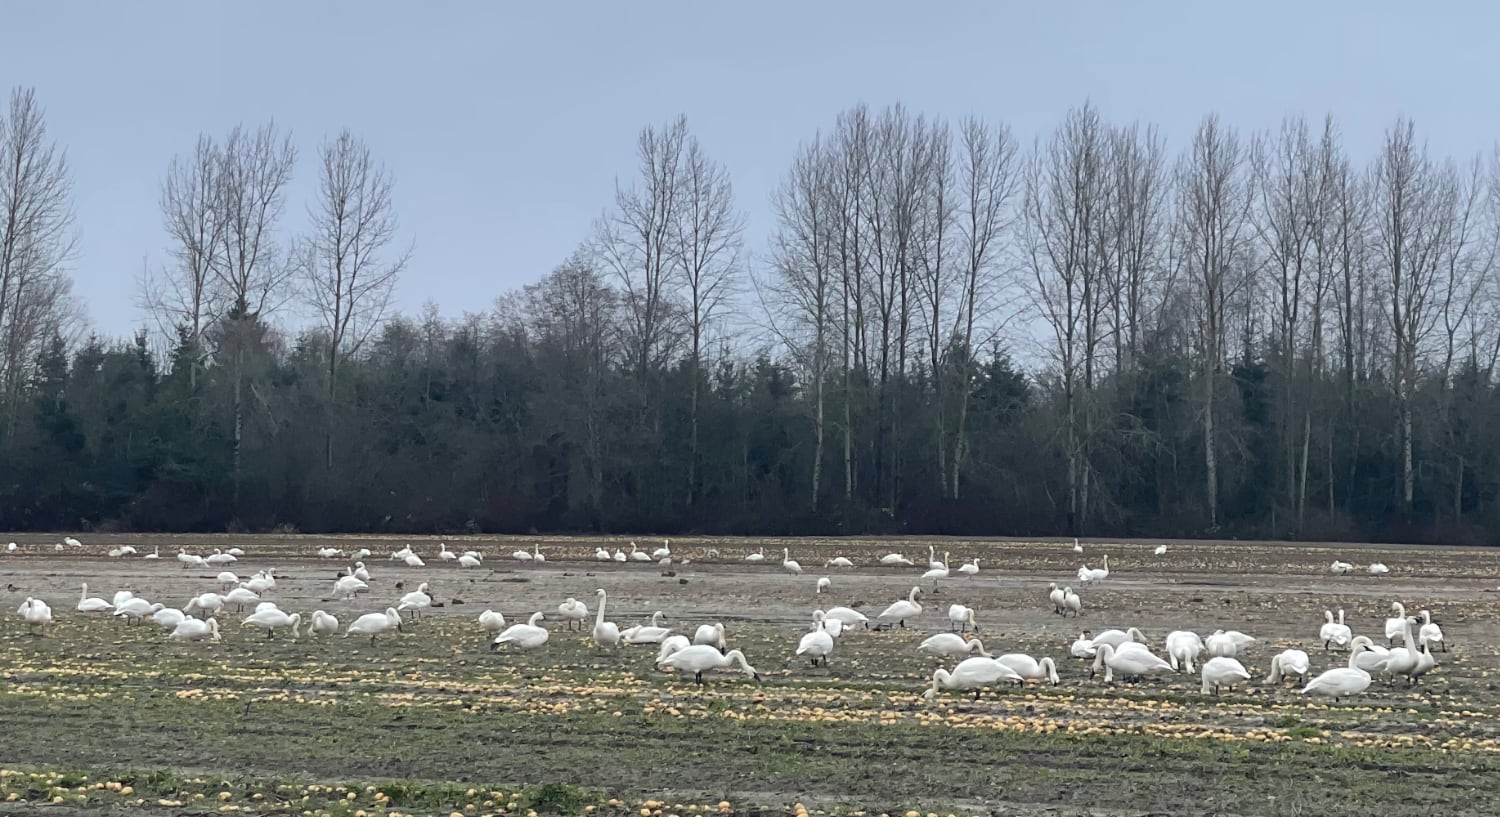 Swans feeding in a field